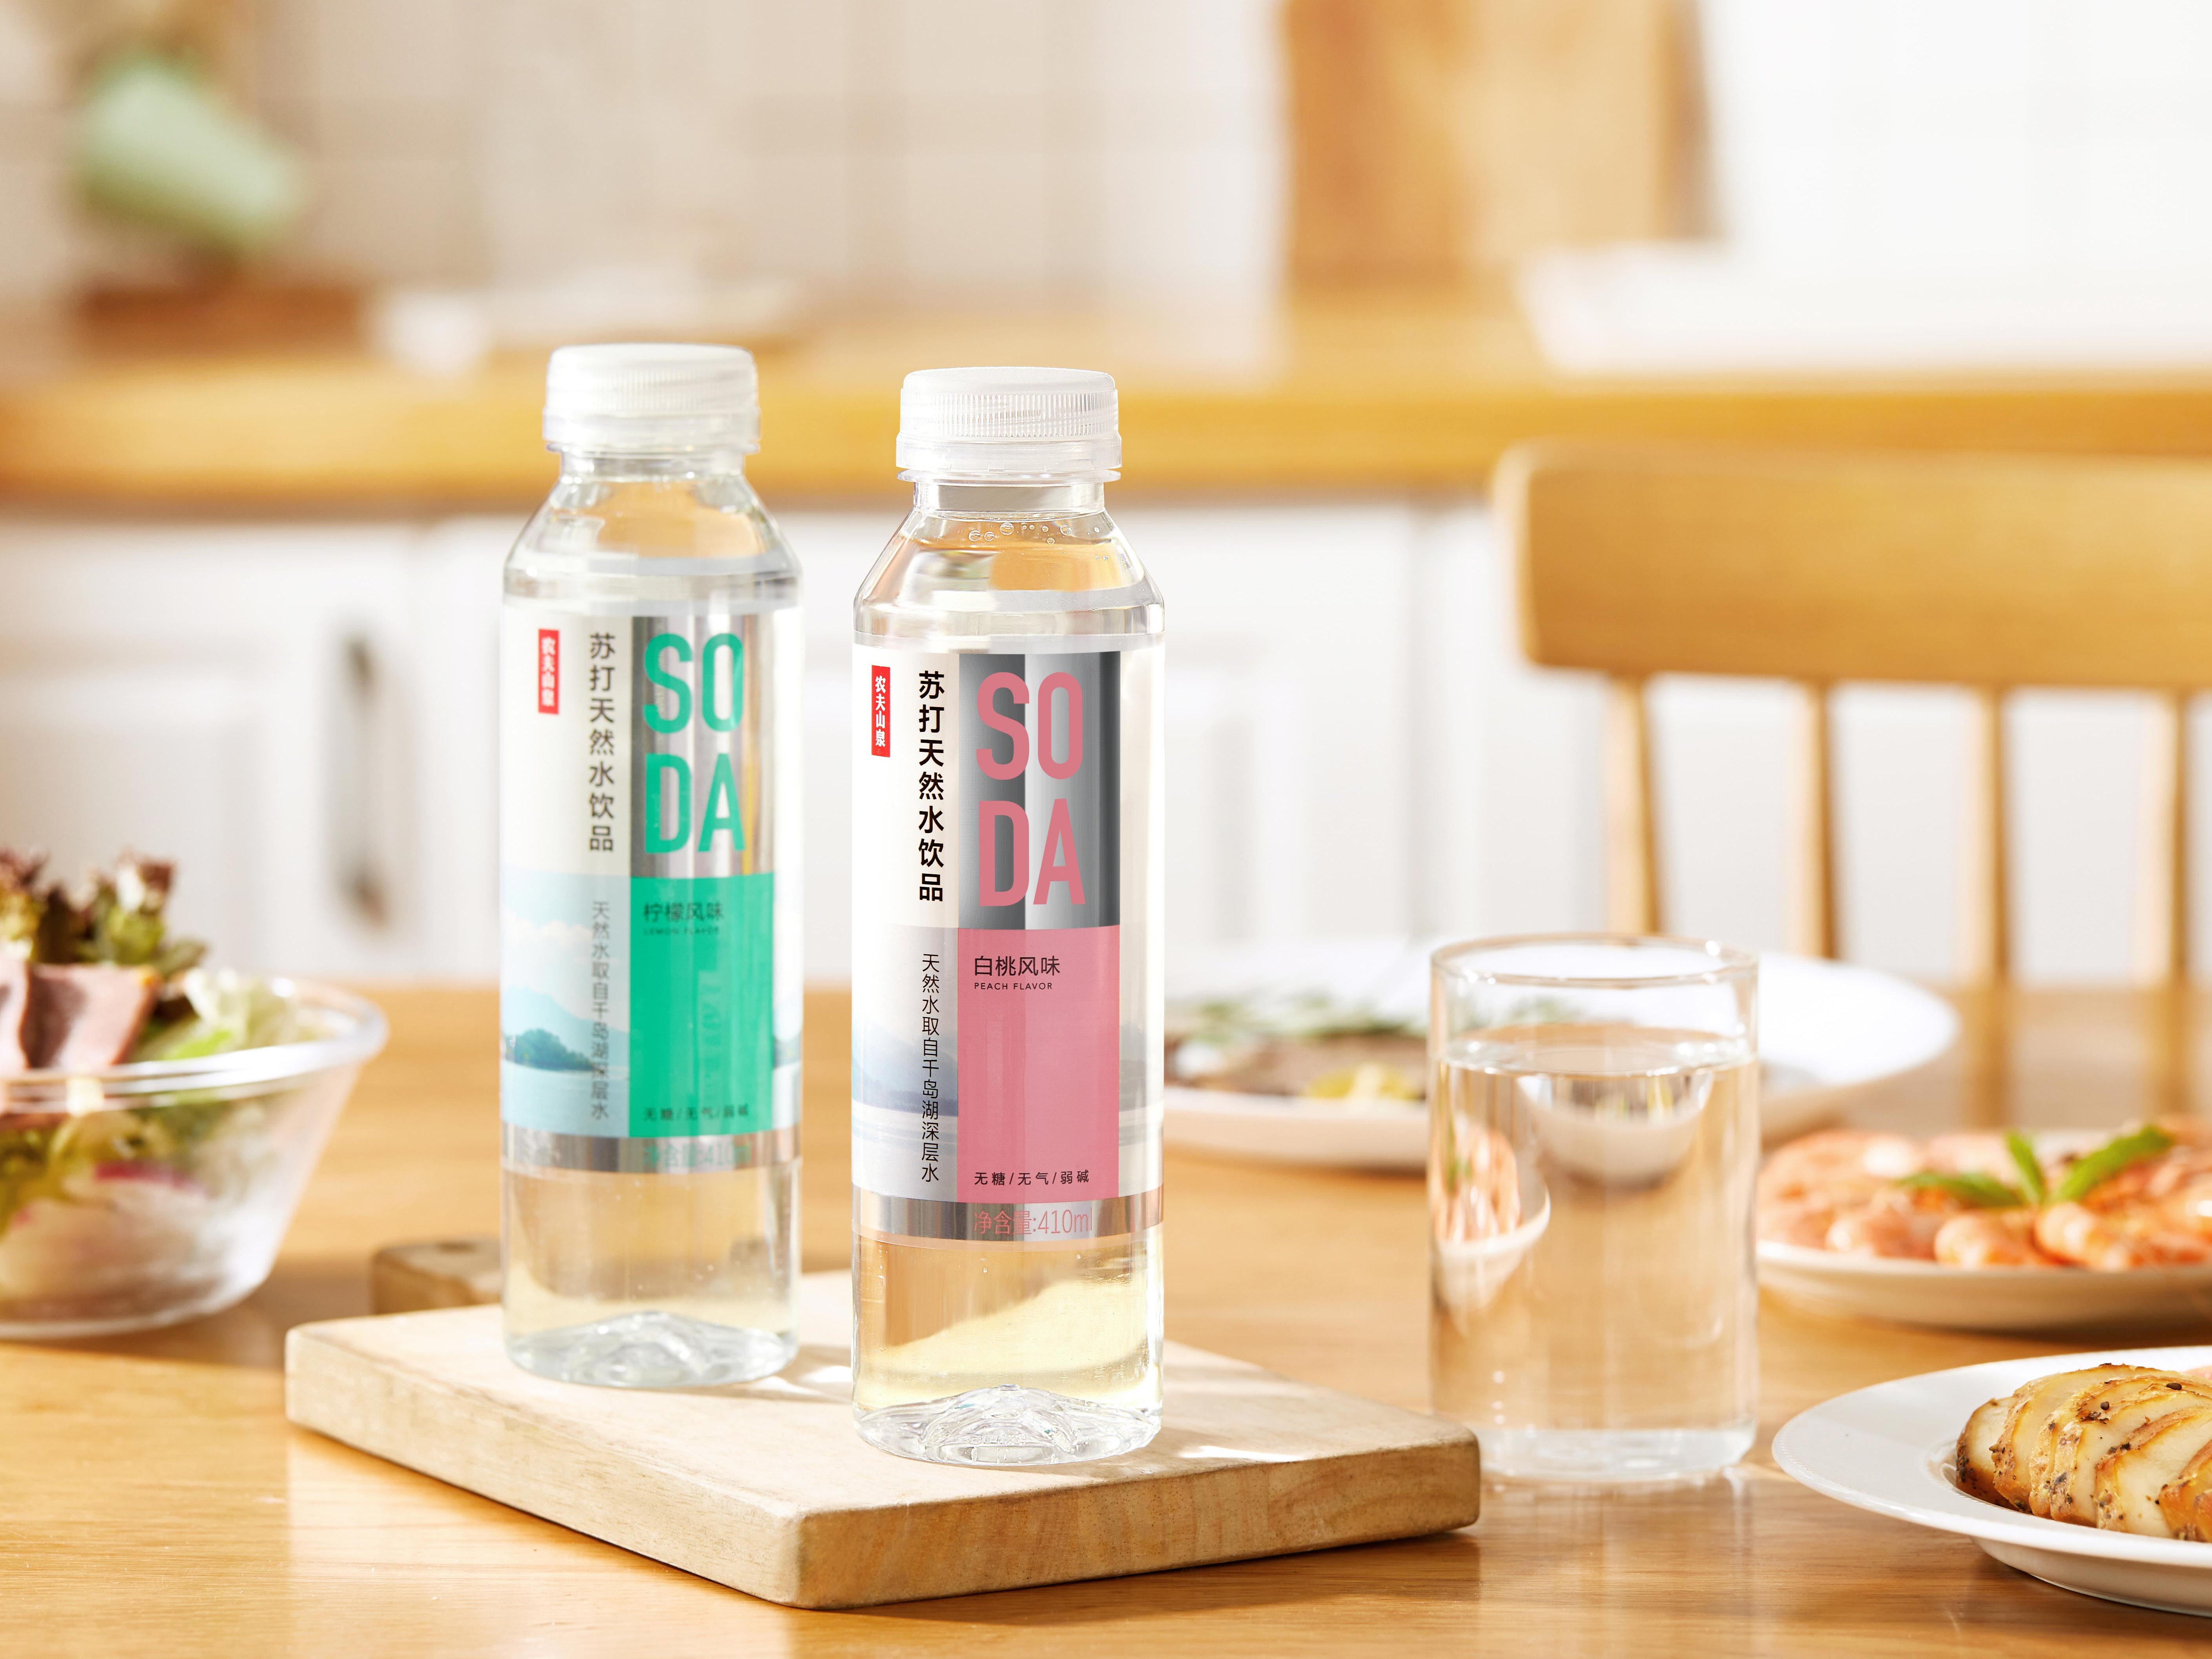 农夫山泉玻璃水 瓶型设计 - 热浪设计创新——新产品新品牌,创新赋能机构